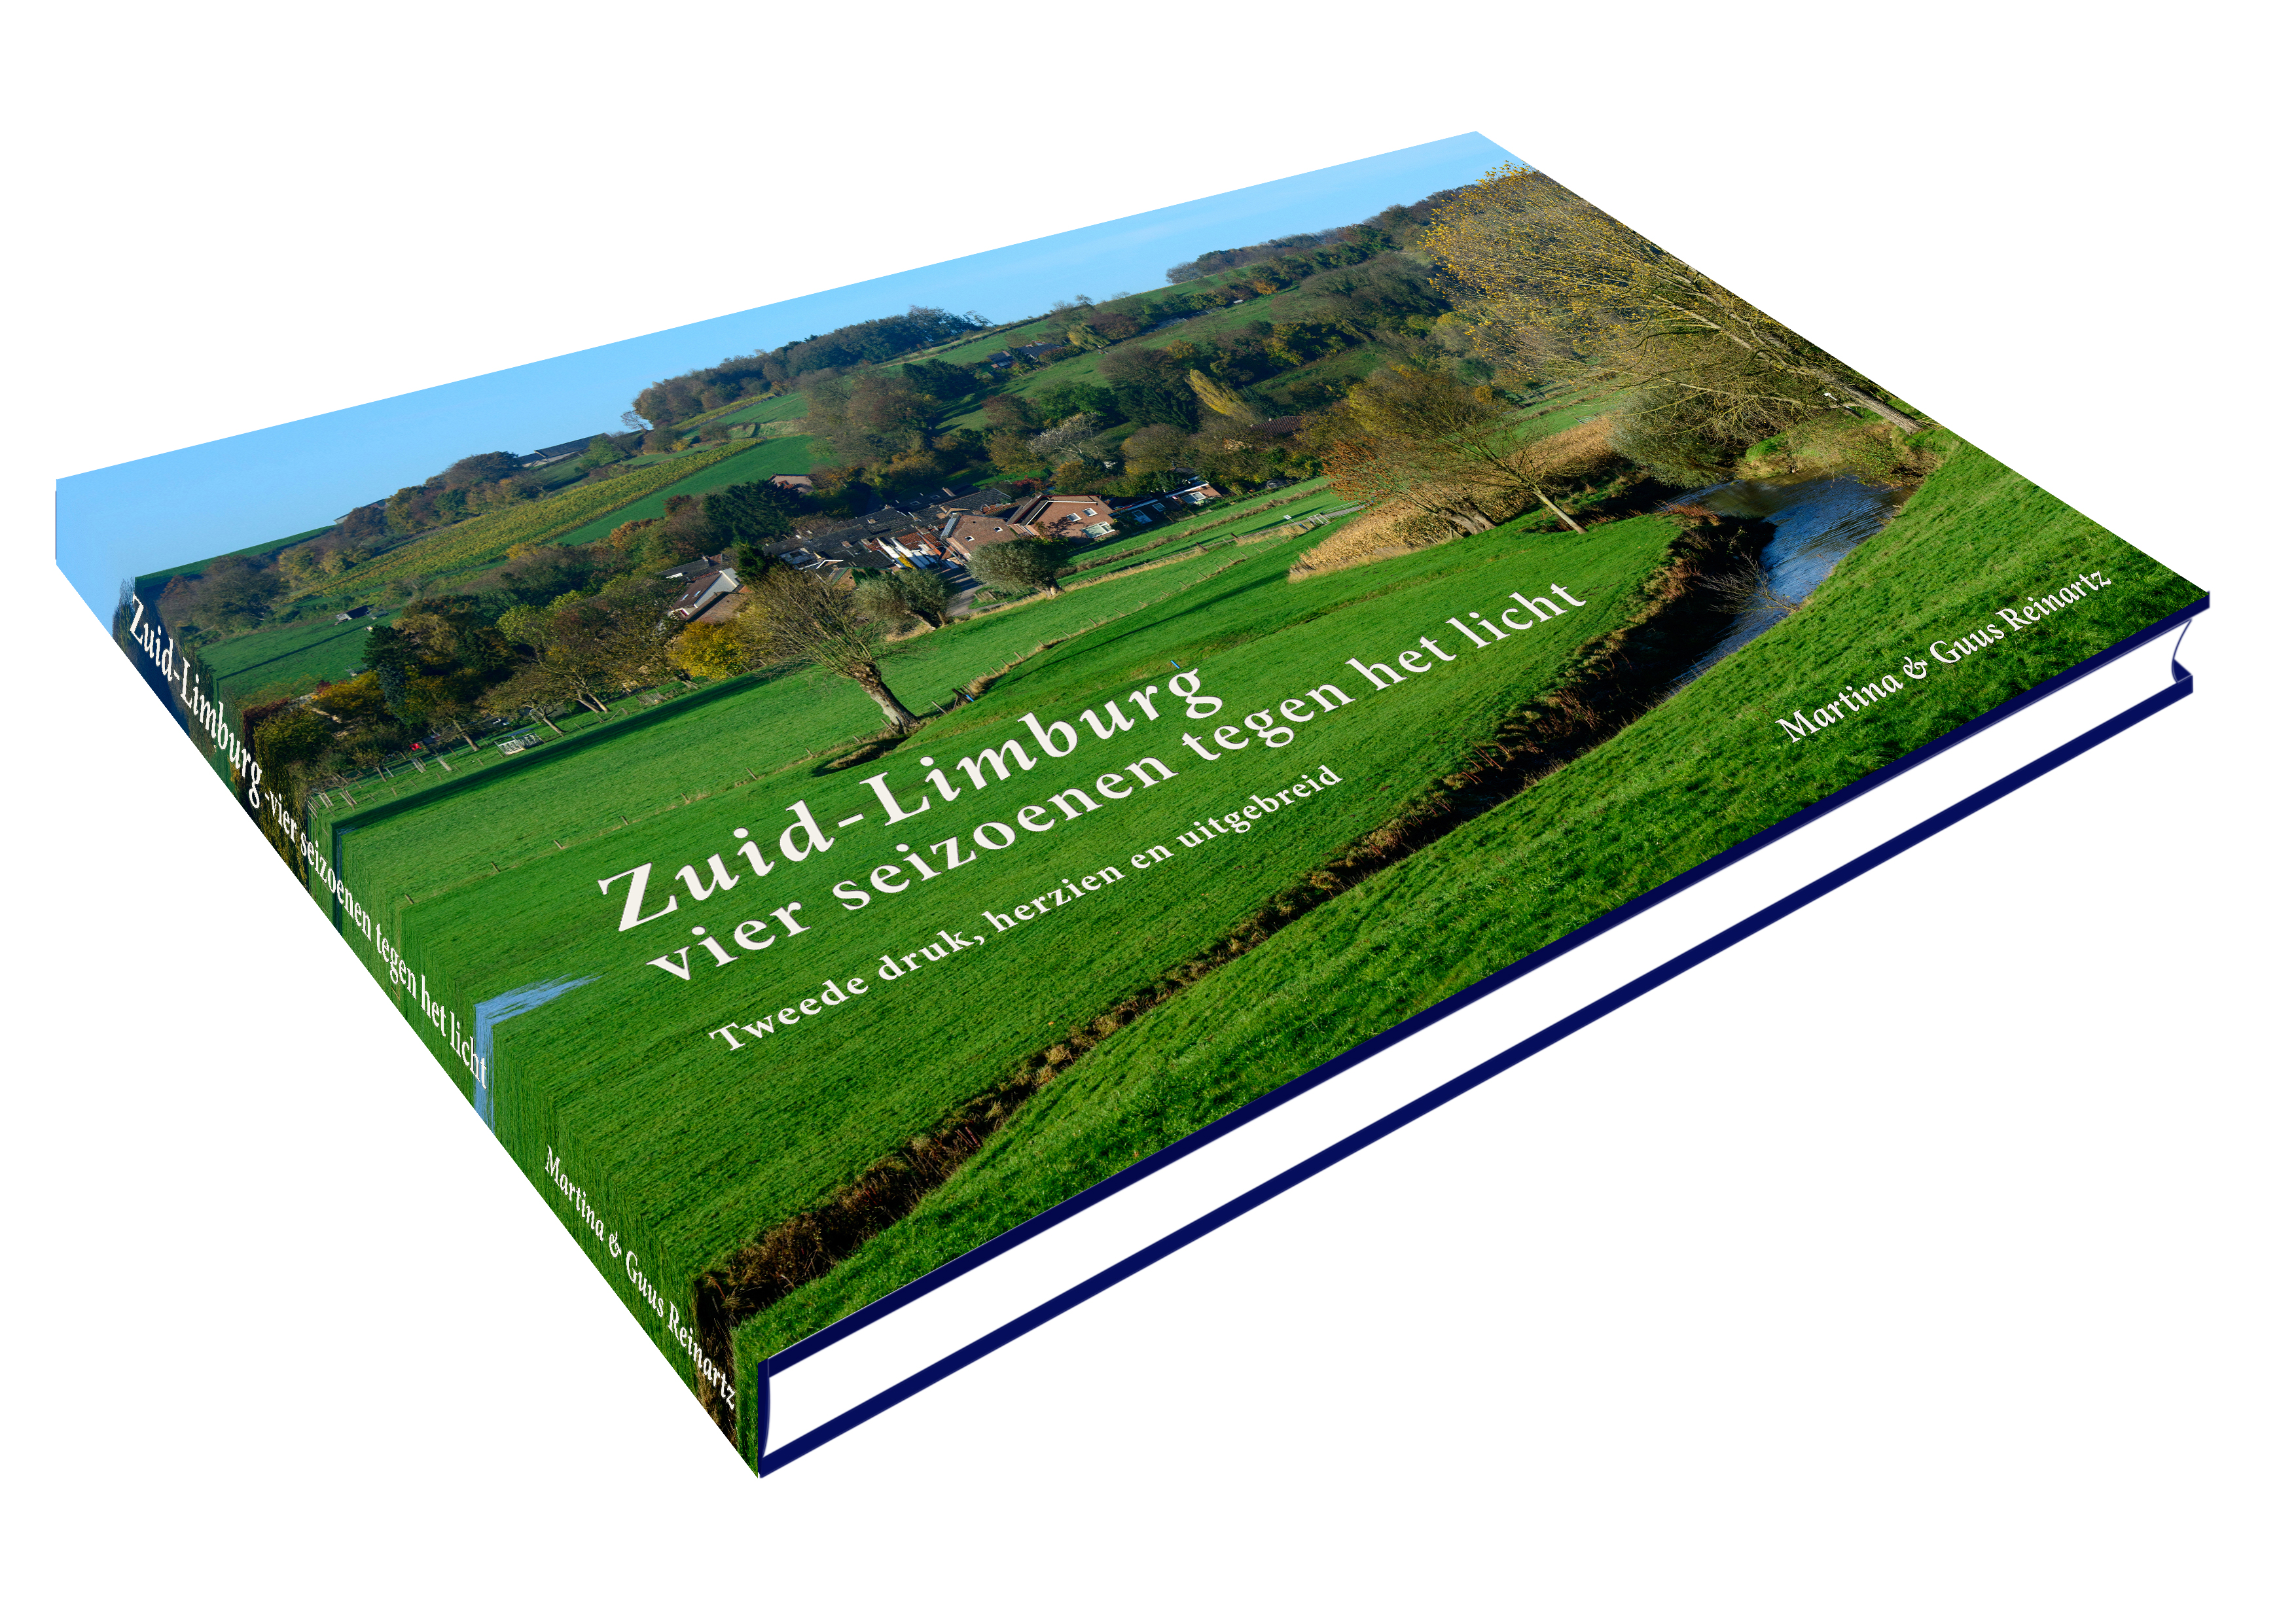 Boek Limburg 3D Tweede druk, herzien en uitgebreid